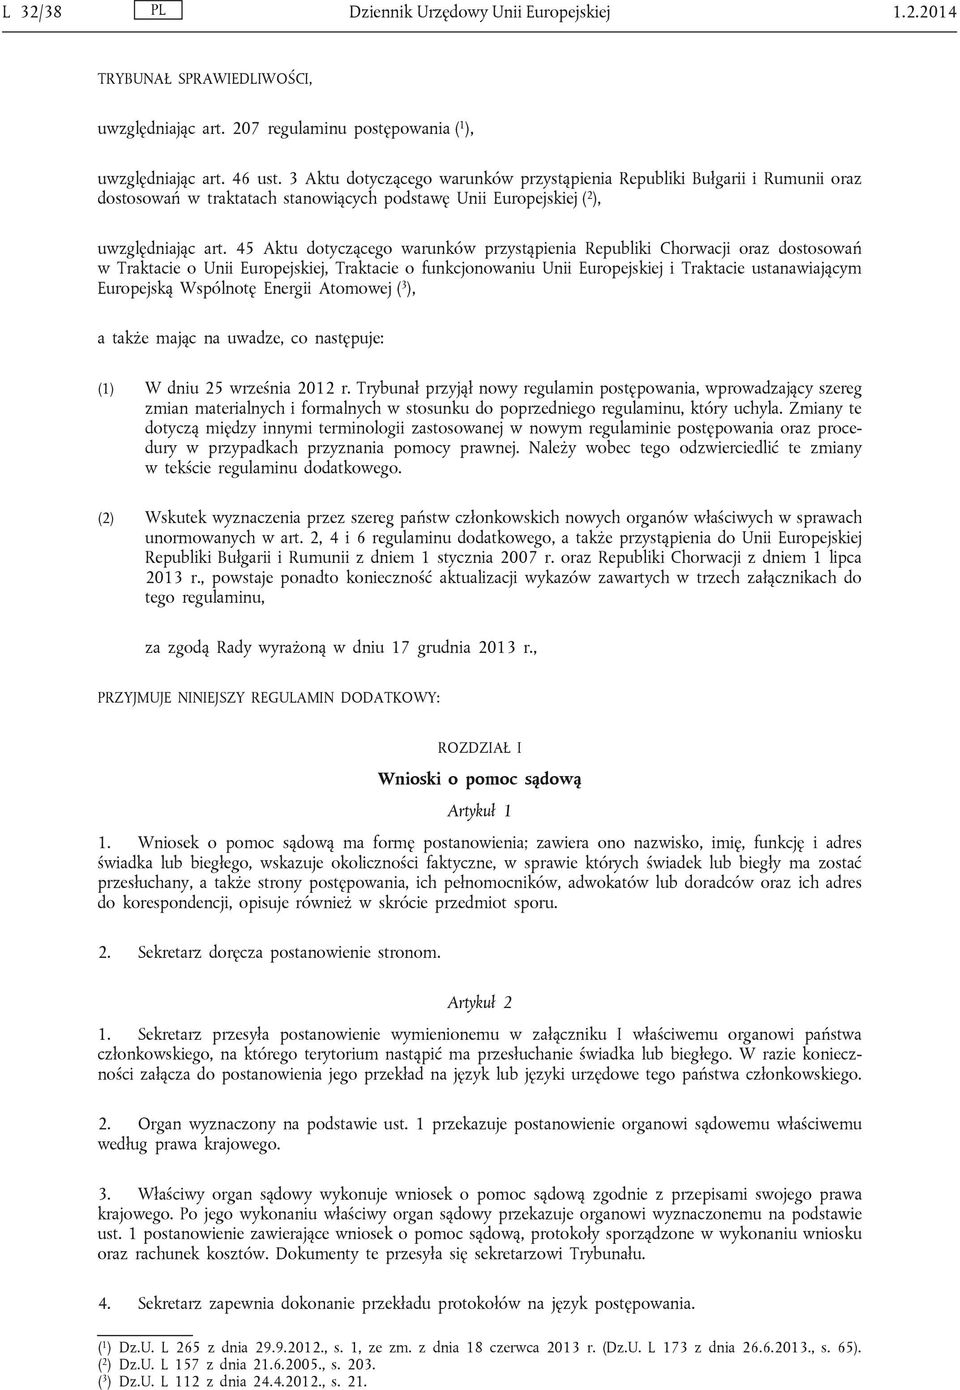 45 Aktu dotyczącego warunków przystąpienia Republiki Chorwacji oraz dostosowań w Traktacie o Unii Europejskiej, Traktacie o funkcjonowaniu Unii Europejskiej i Traktacie ustanawiającym Europejską